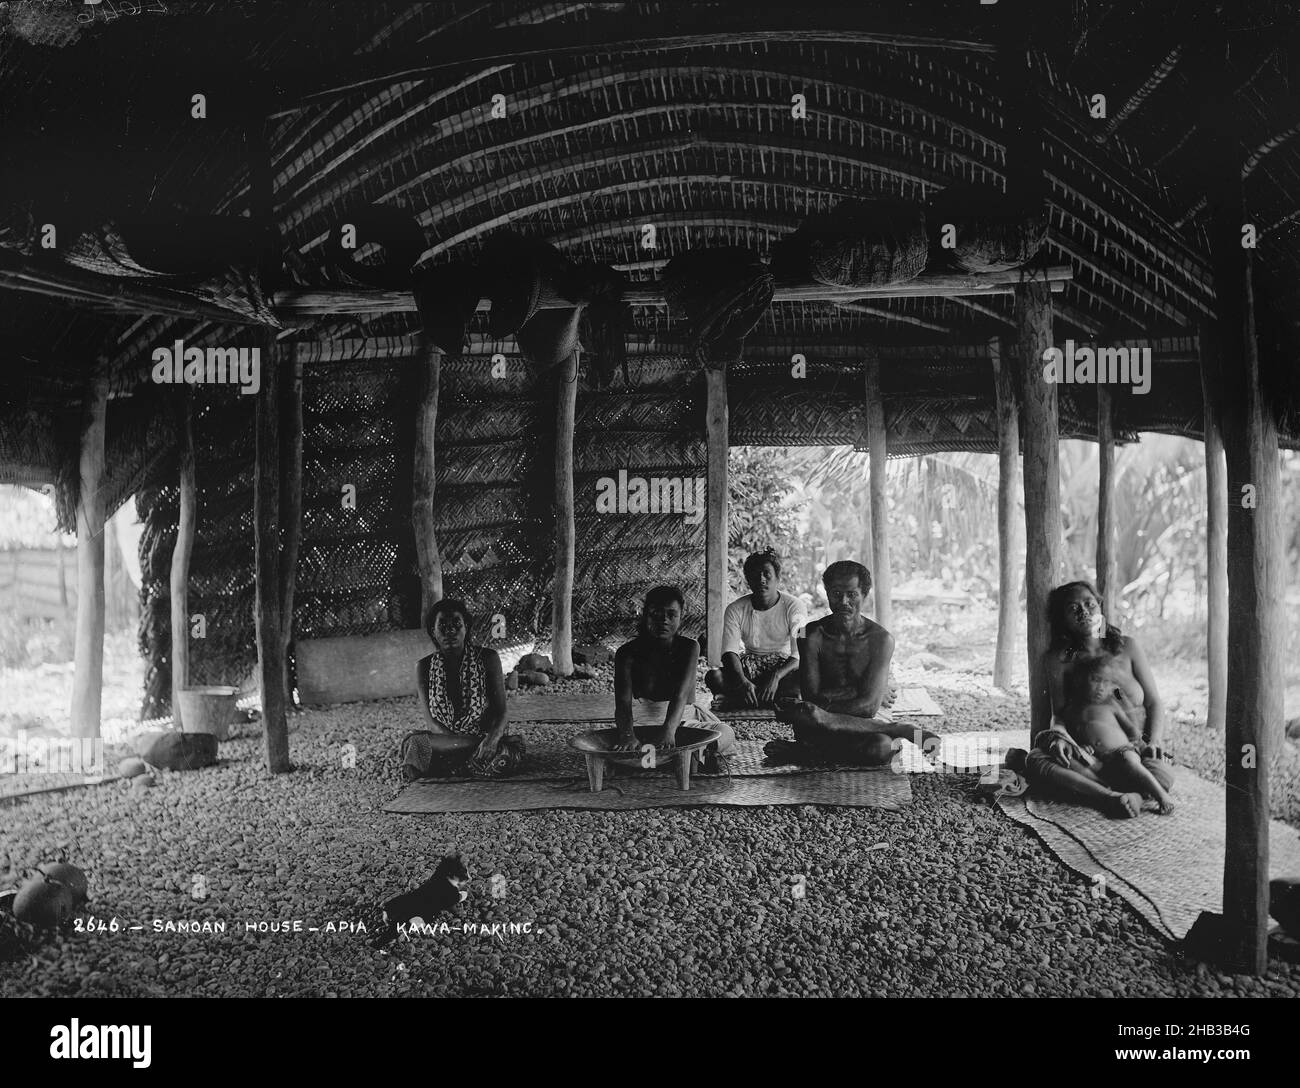 Samoan House, Apia, Kava-making, Burton Brothers studio, studio de photographie,21 juillet 1884, Nouvelle-Zélande, photographie en noir et blanc, intérieur de la grande Fale.Un homme et trois femmes sont assis à pieds croisés sur un tapis tissé au centre, une femme est assise derrière et une femme avec un enfant sur les genoux est assise avec le dos à un poteau à droite.La femme au centre a les mains dans un grand bol de kava.Un chat est au premier plan Banque D'Images